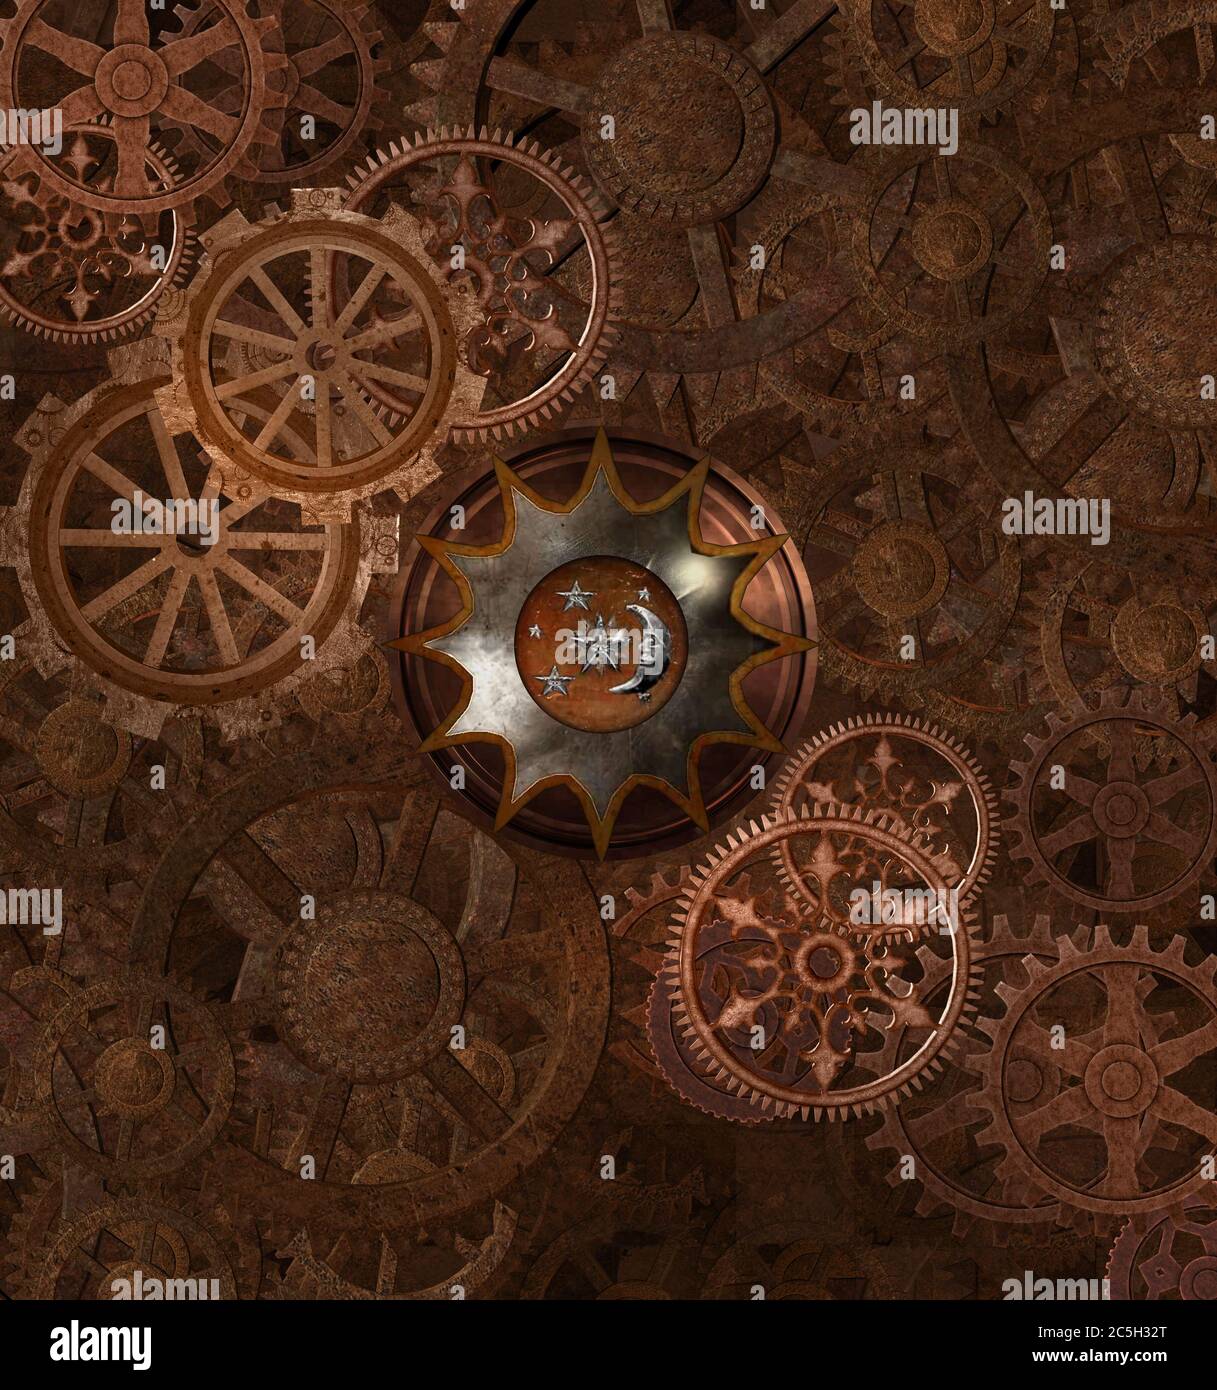 Le fond est rouillé par le steampunk et il y a beaucoup de roues dentées Banque D'Images